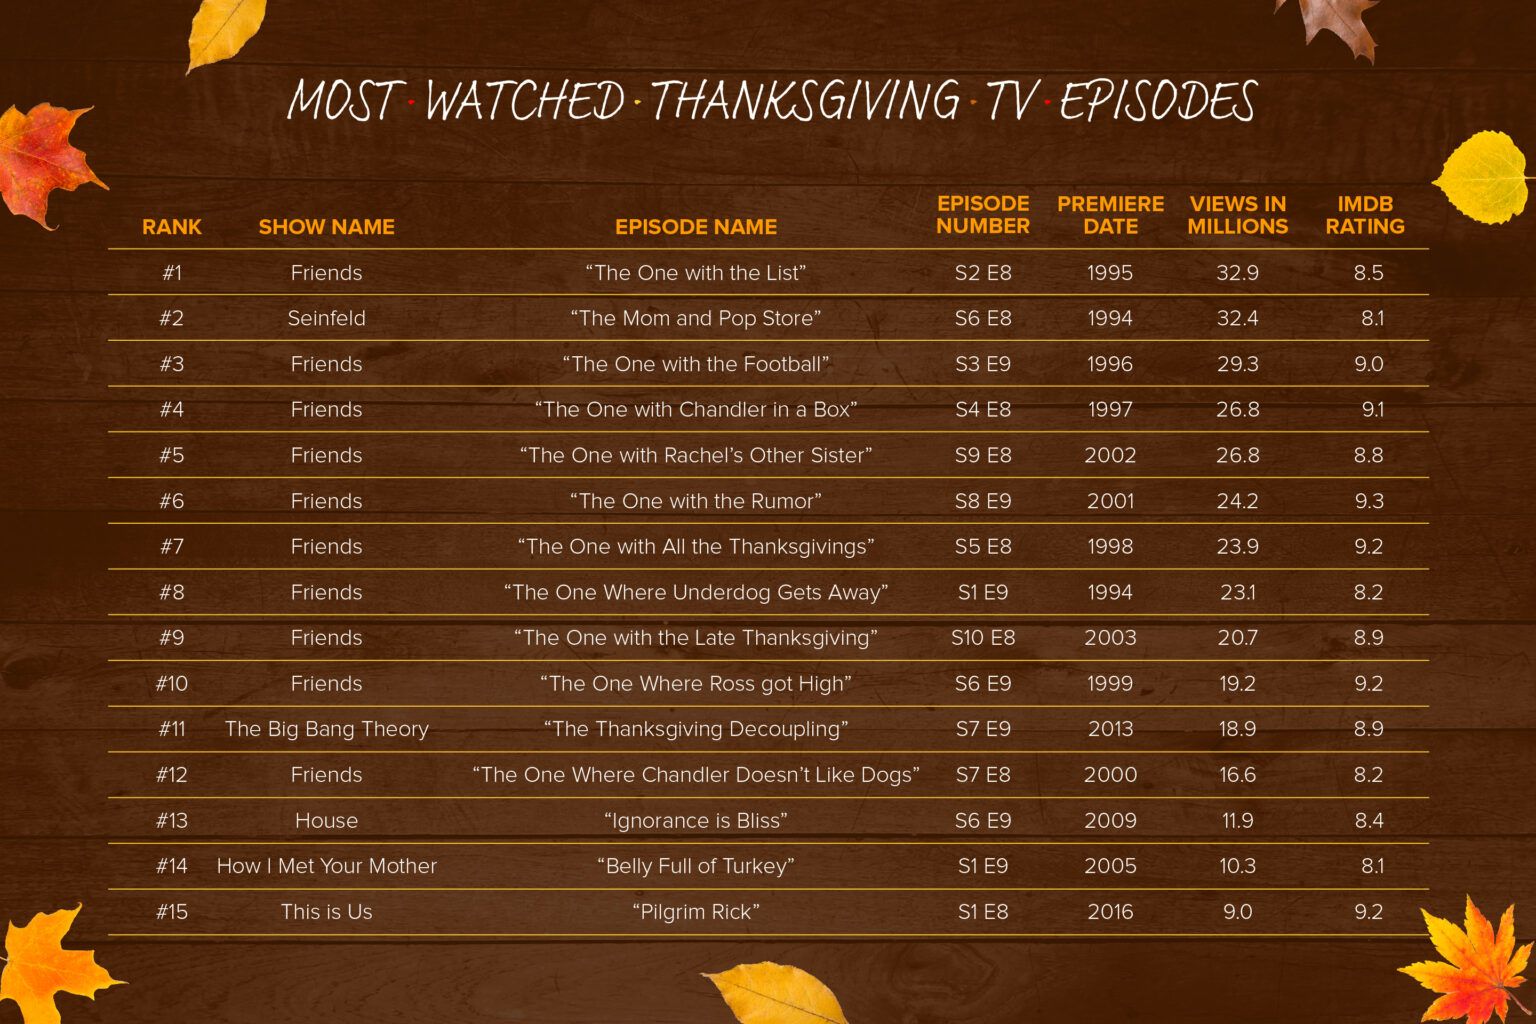 Friends Dominates List Of MostViewed Thanksgiving TV Episodes